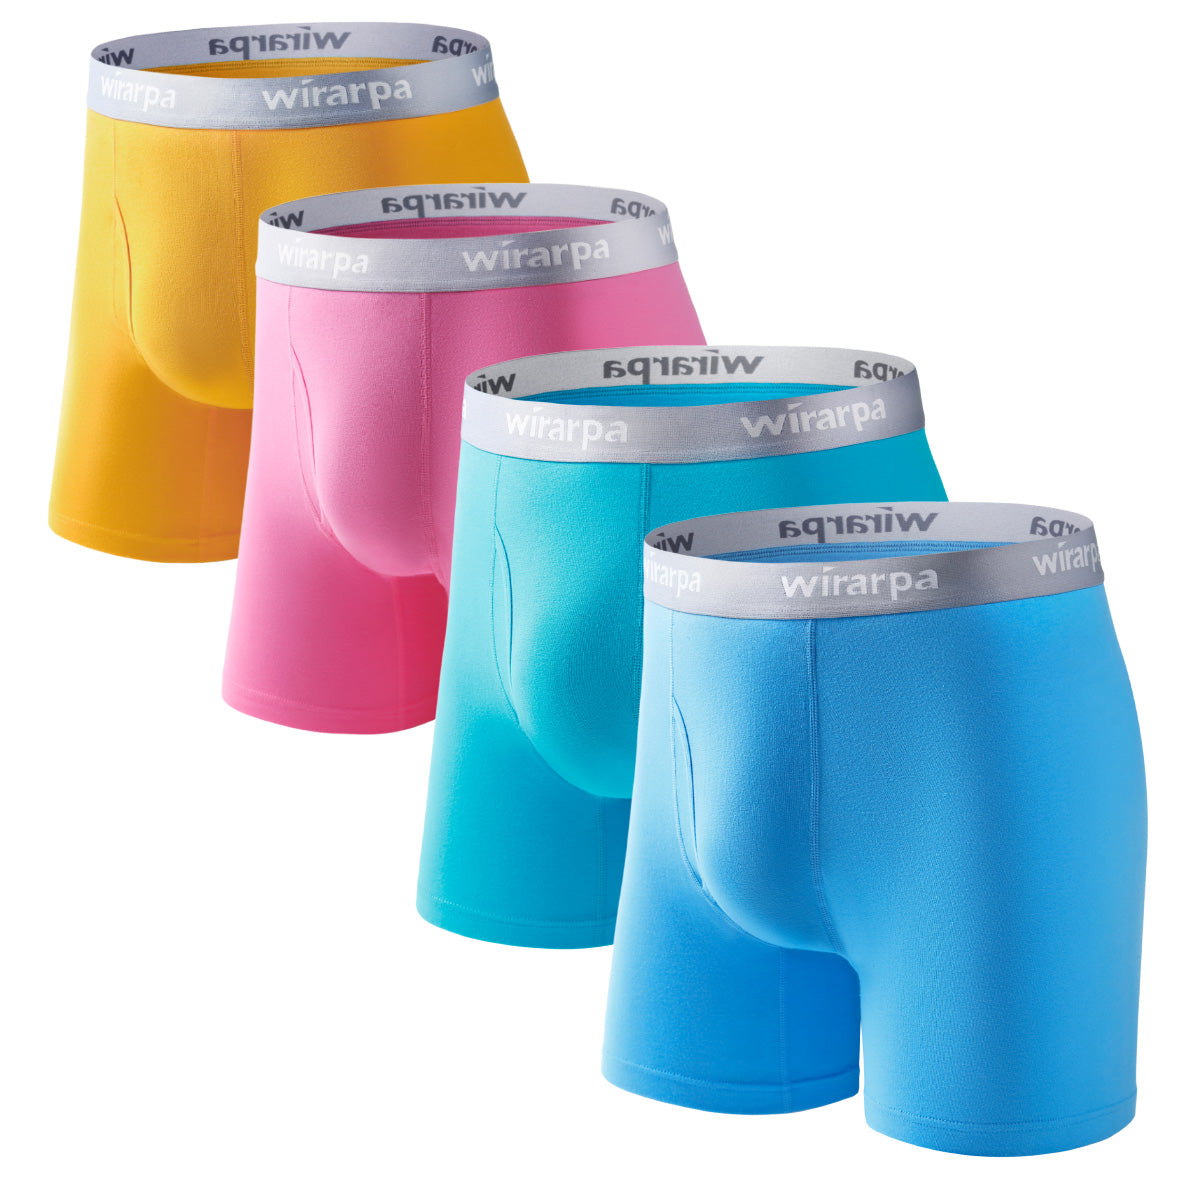 wirarpa Men's Cotton Boxer Briefs Underwear Regular Leg 4 Pack